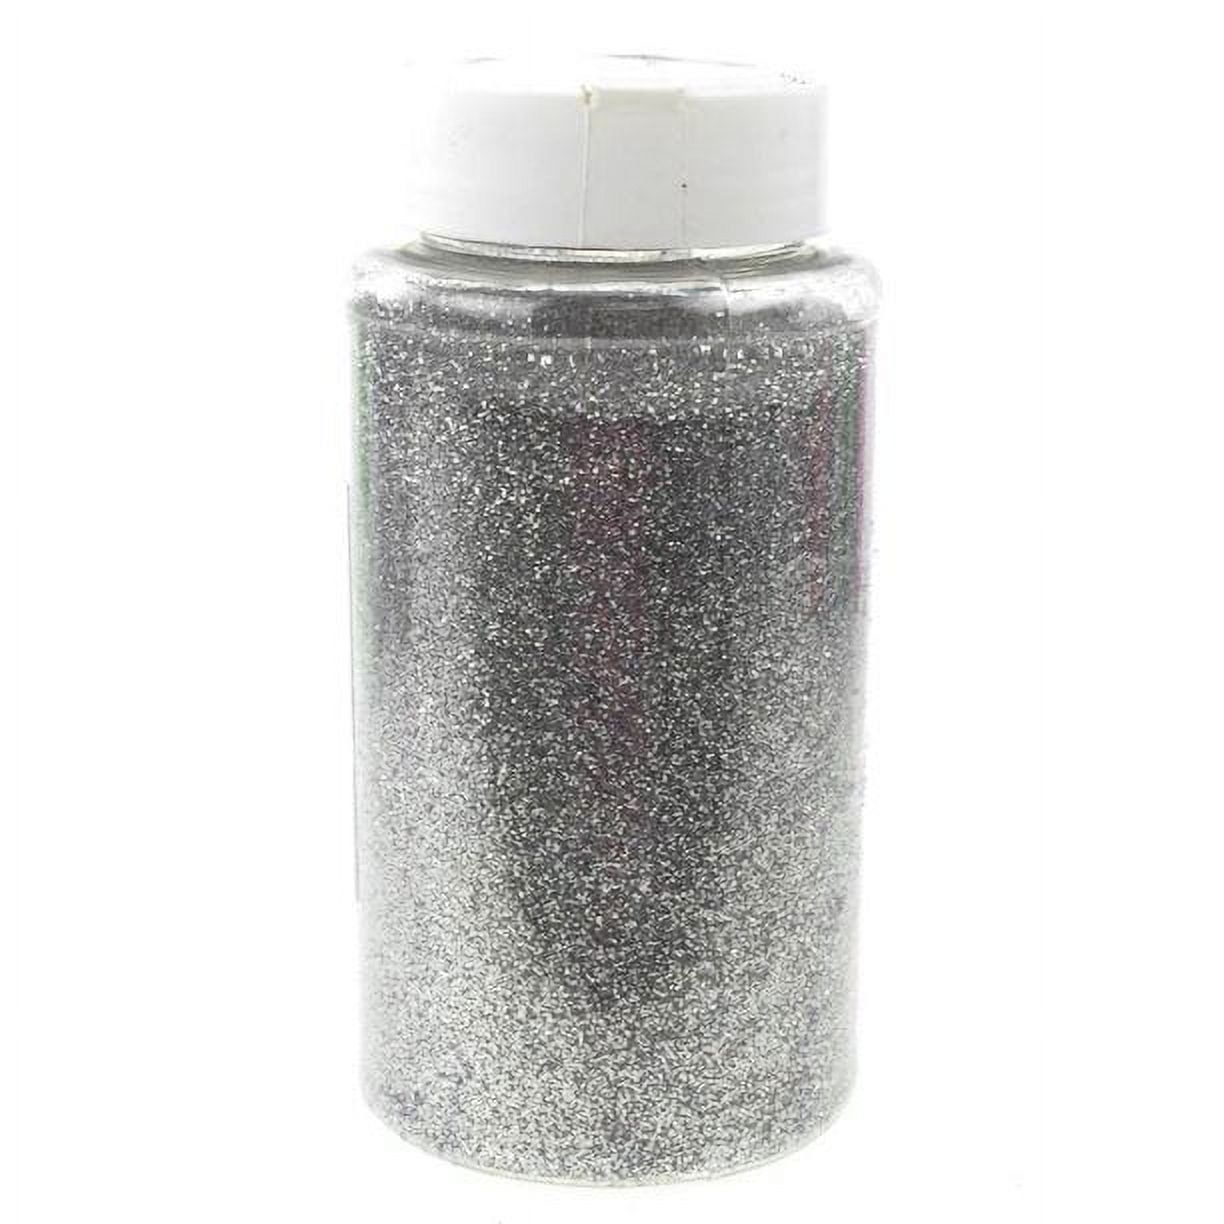 Fine Glitter Bottle, 1-Pound BULK, Lavender 